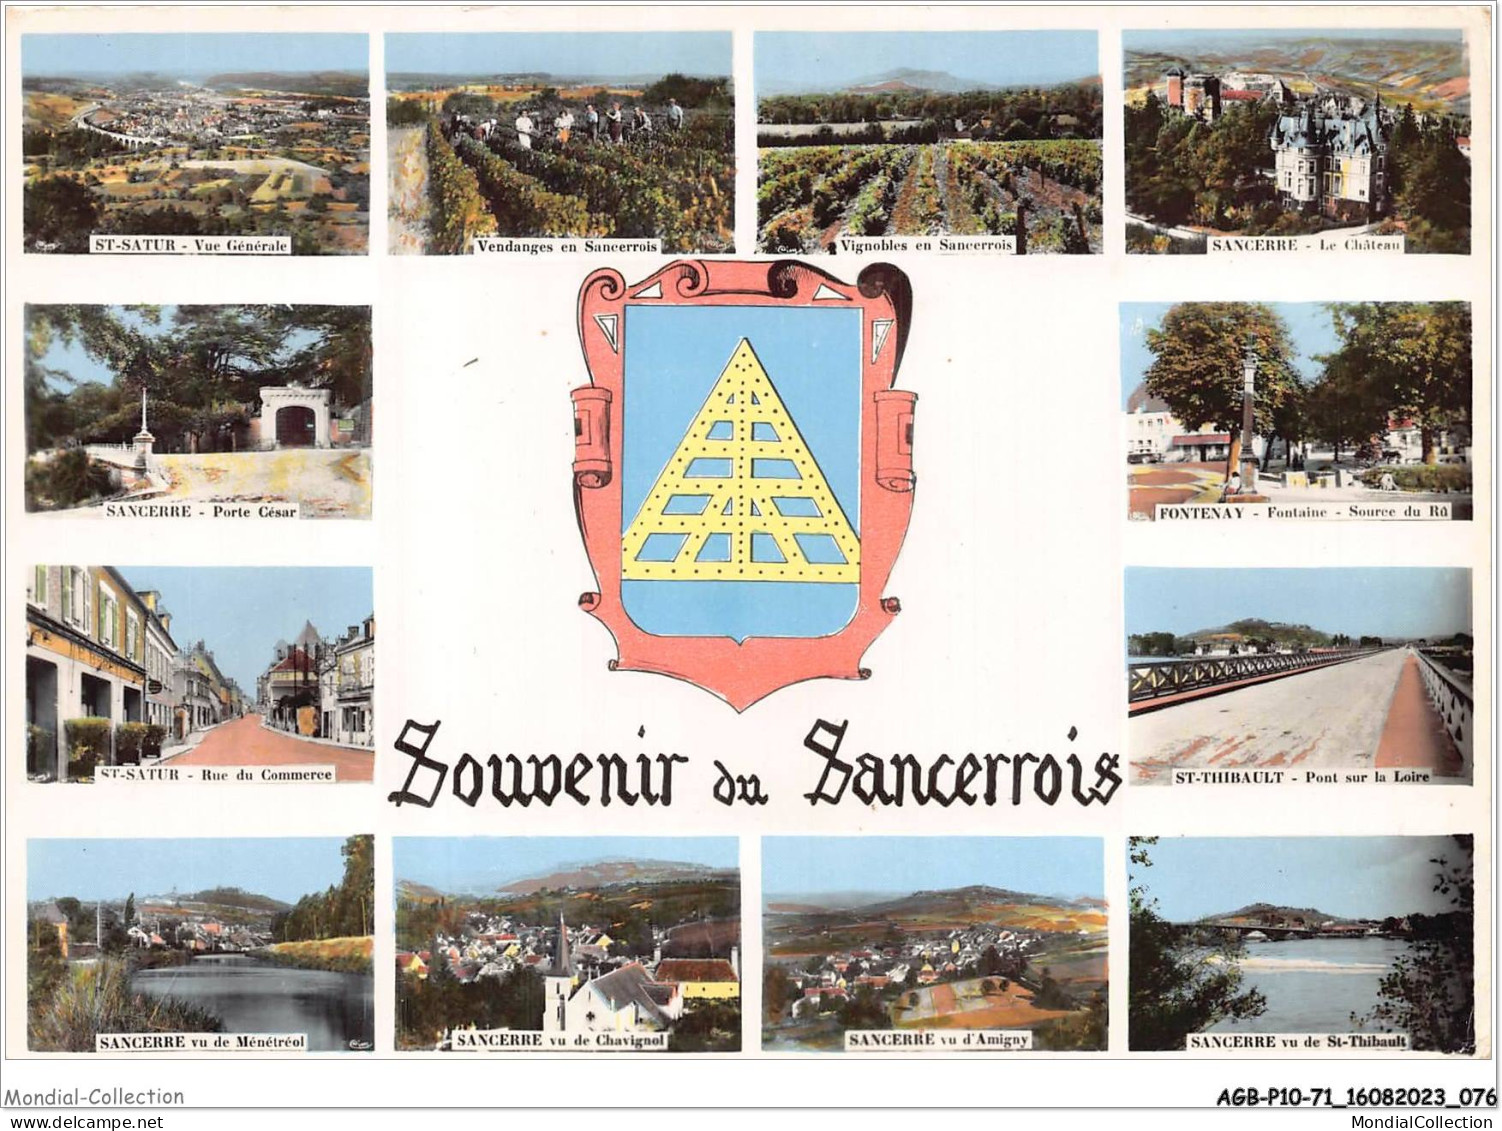 AGBP10-71-1013 - SANCERRE ST SATUR -  Souvenir Du Sancerrois - Sancerre